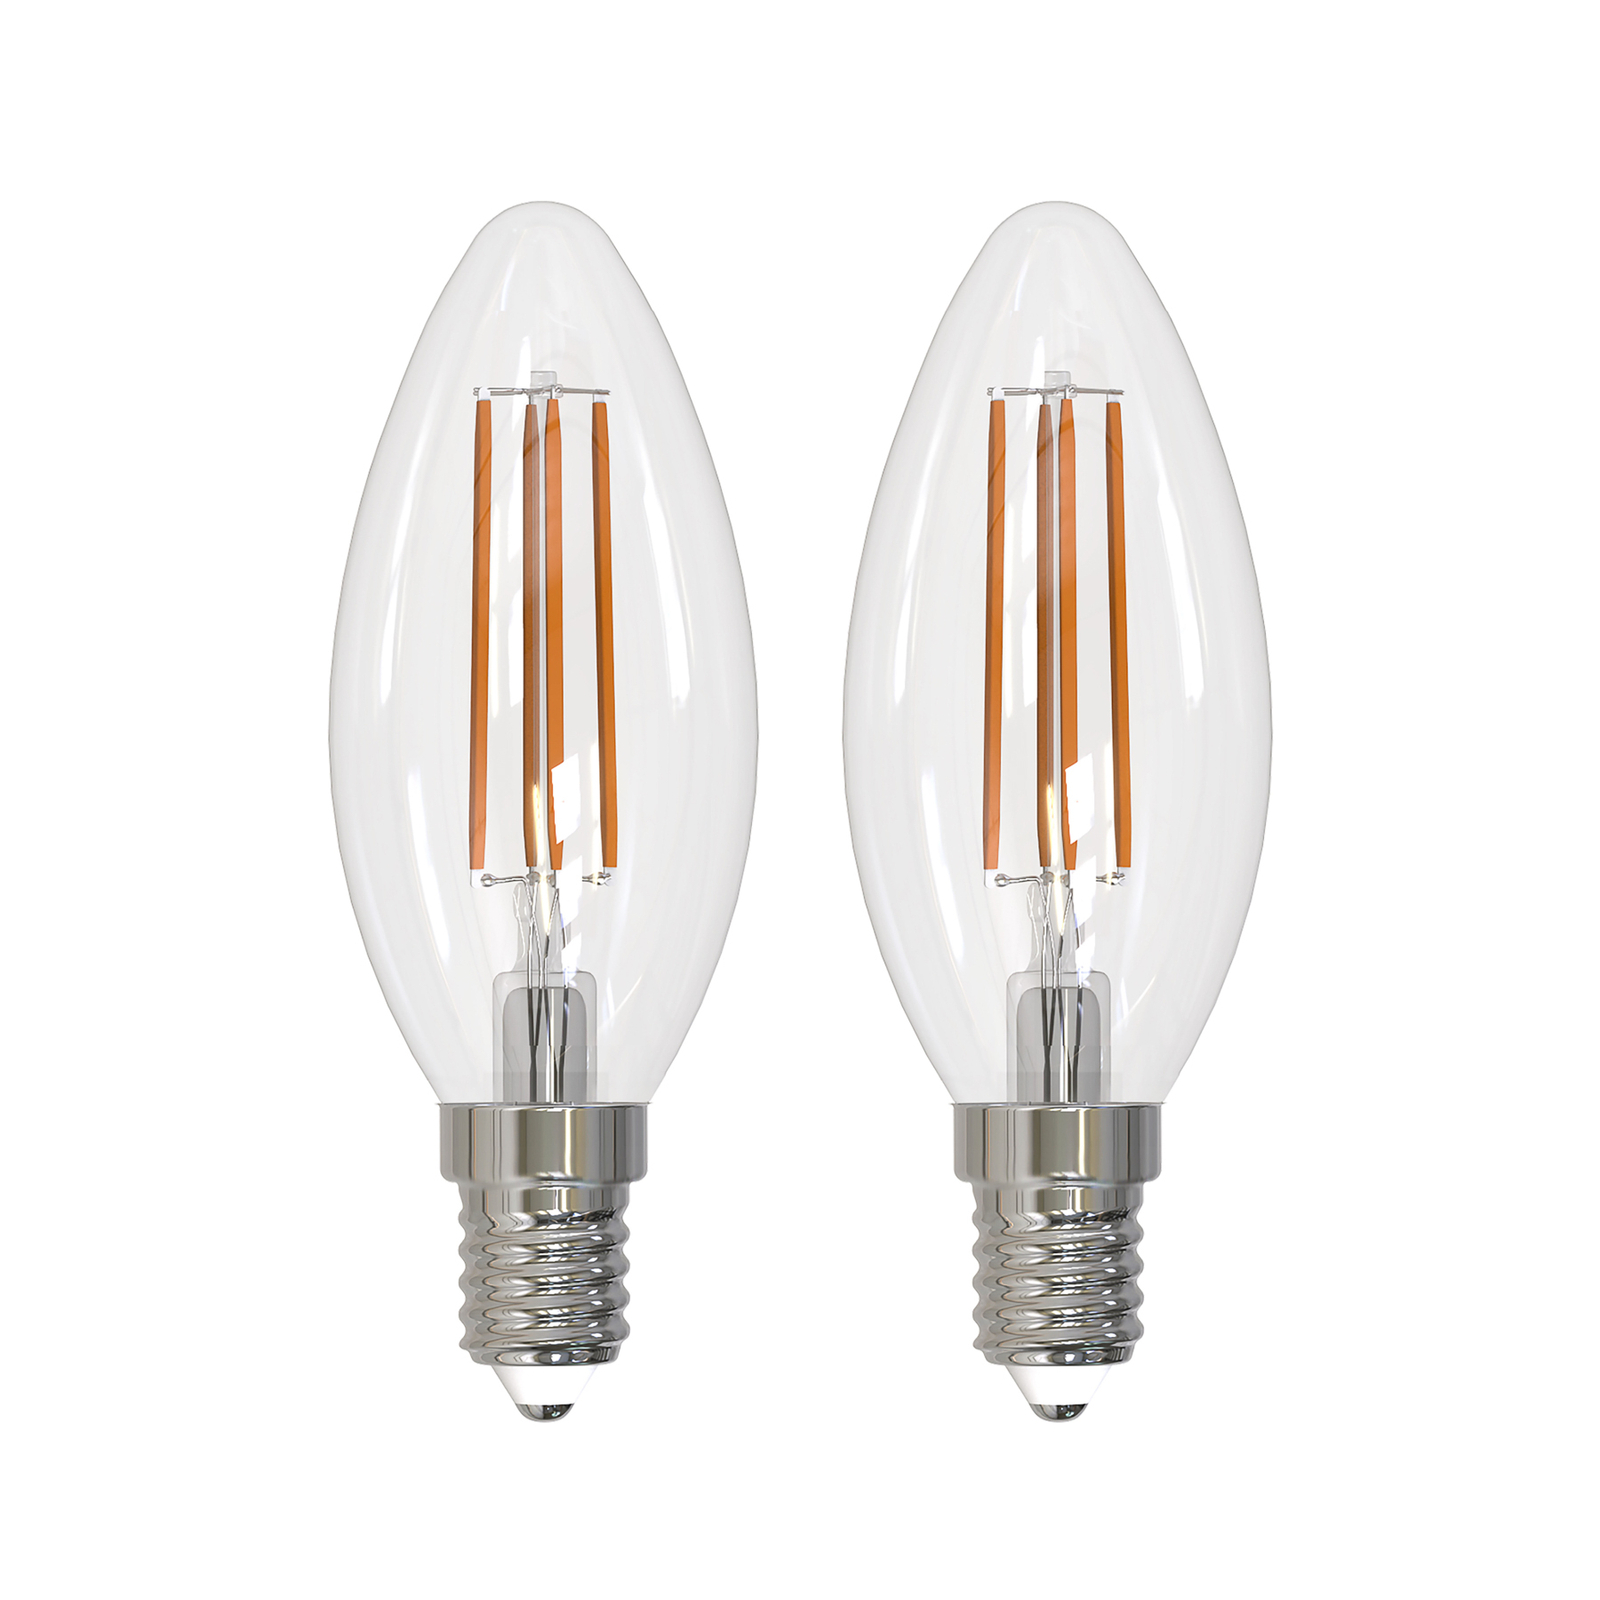 Arcchio filament LED bulb E14 candle, set of 2, 2700 K